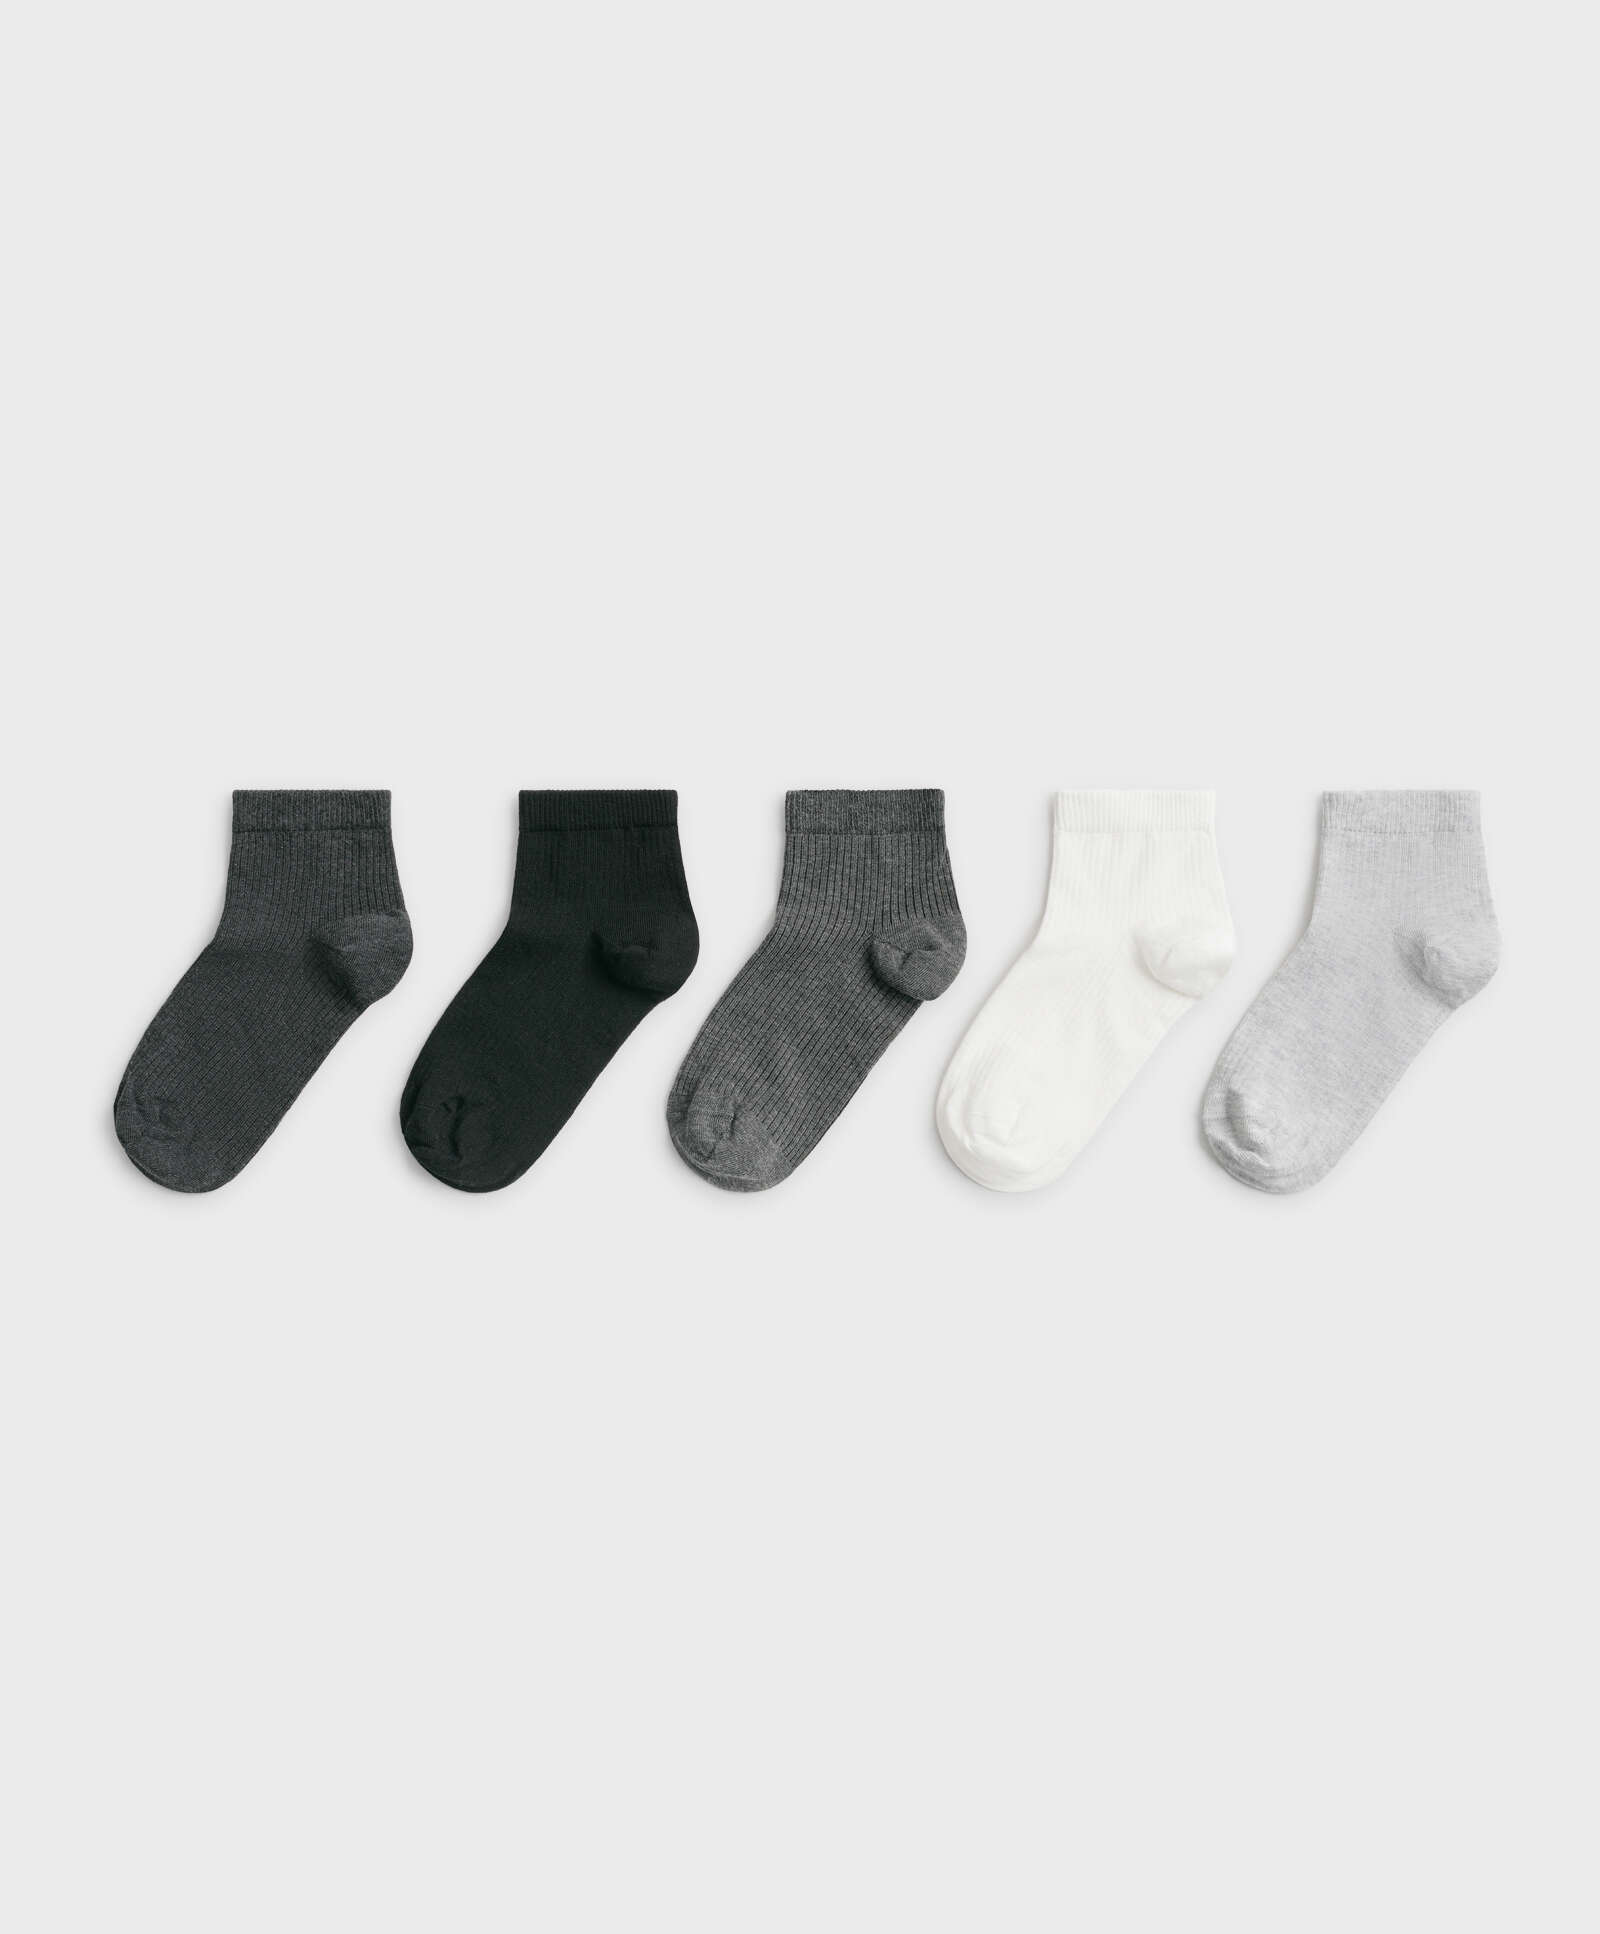 5 Paar viertellange gerippte Socken aus einem Baumwoll-Mix